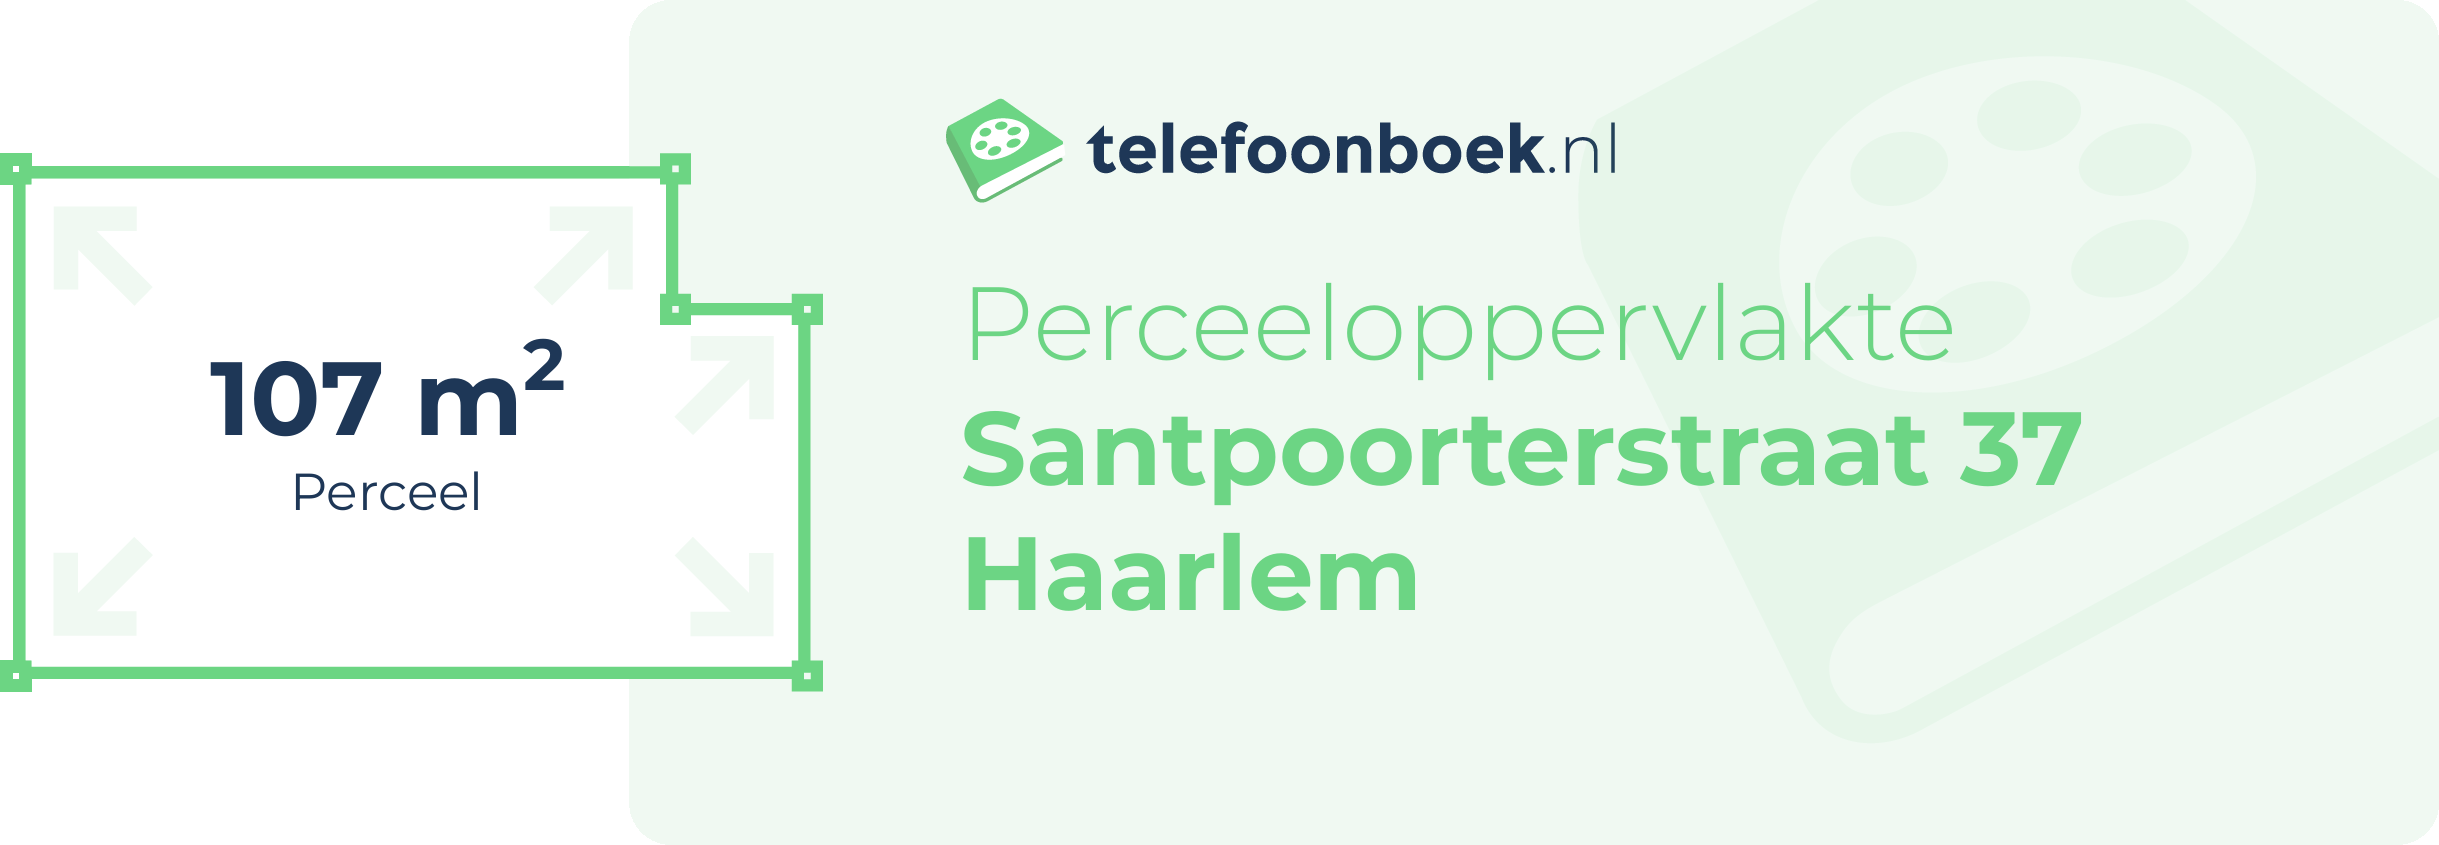 Perceeloppervlakte Santpoorterstraat 37 Haarlem